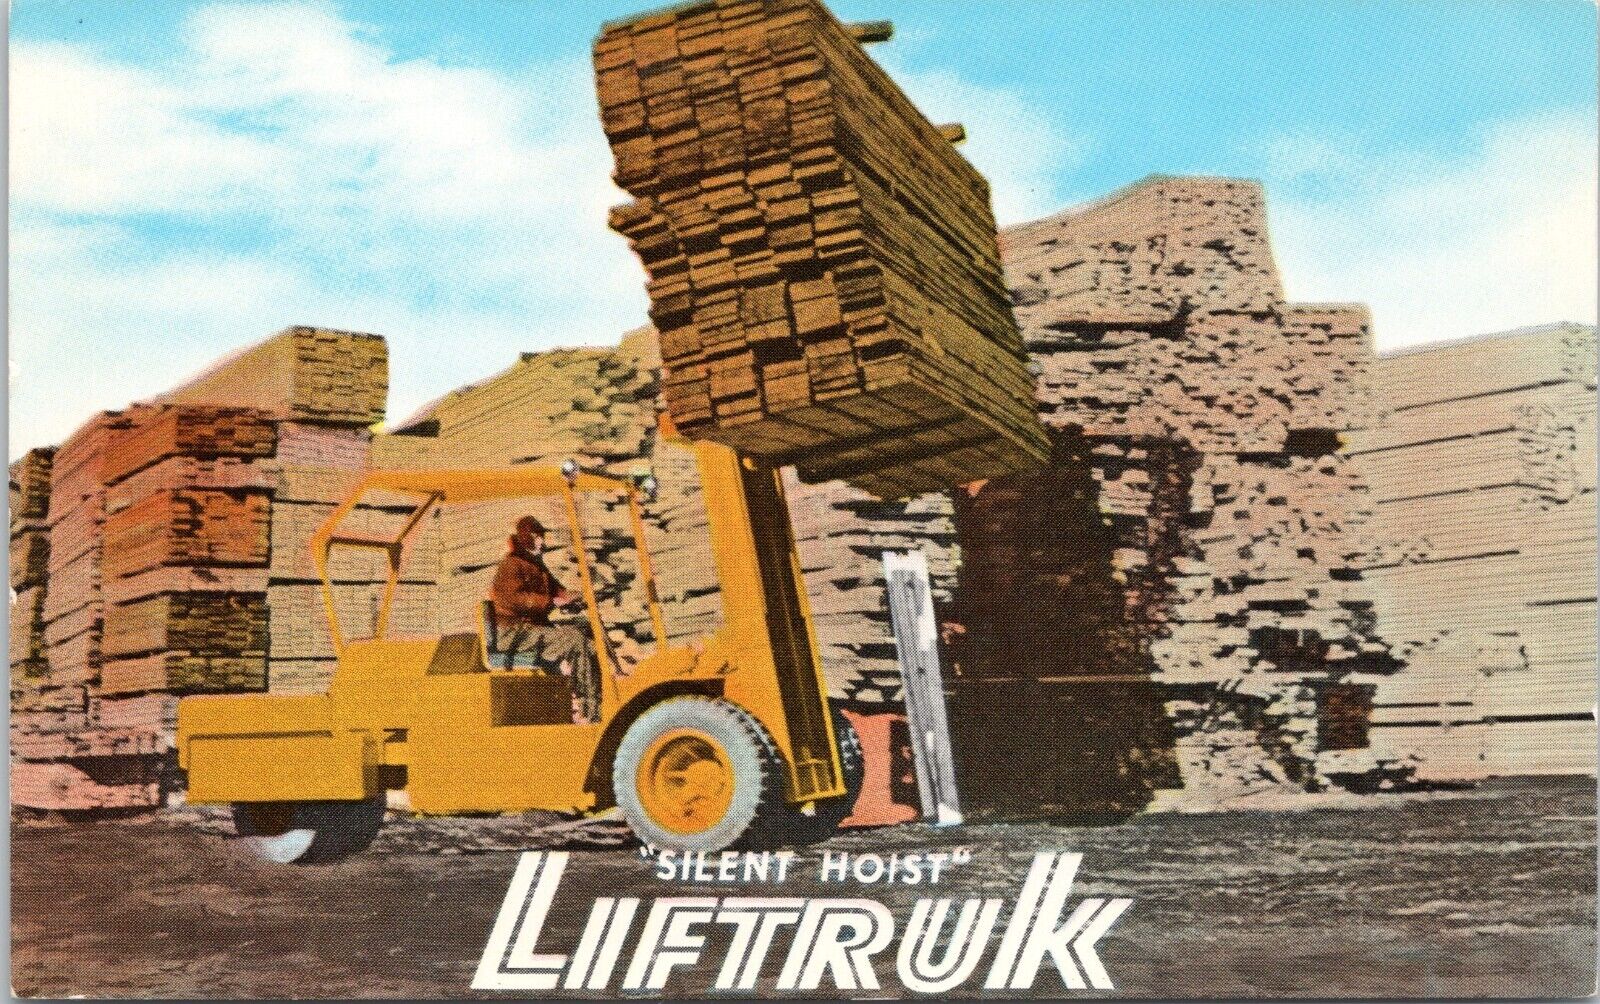 Silent Hoist Liftruk - Vintage Advertising Postcard - Forklift - Construction